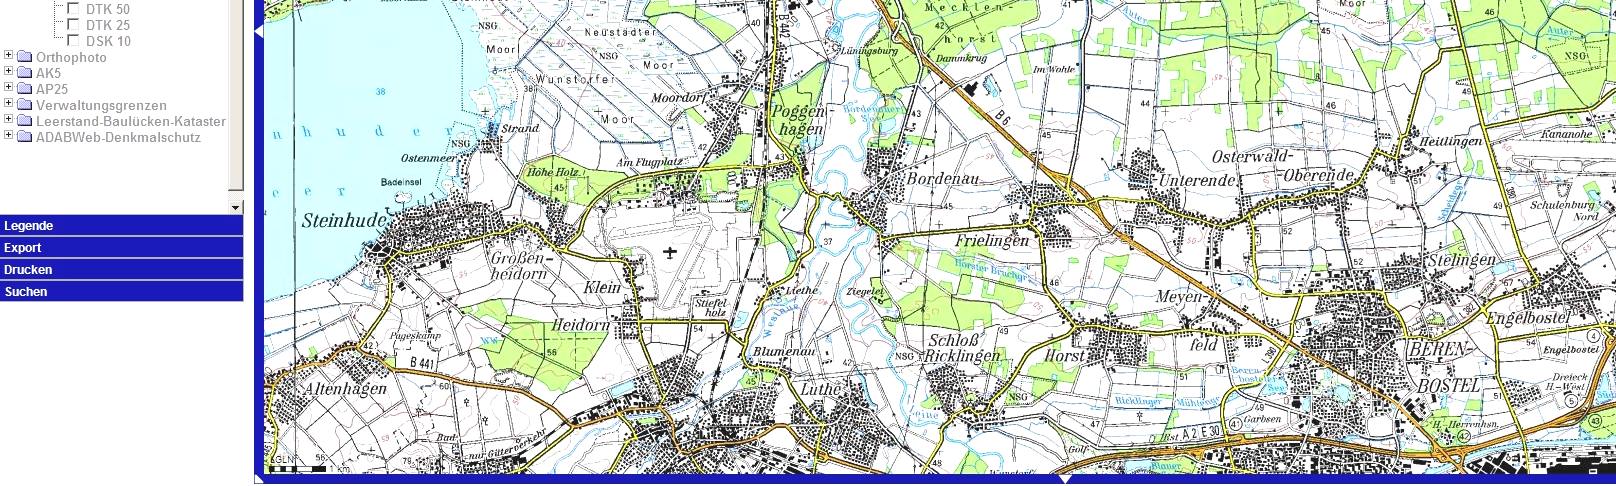 Intranet-Dienst für Kommunen Topografische Karten Karten aus dem